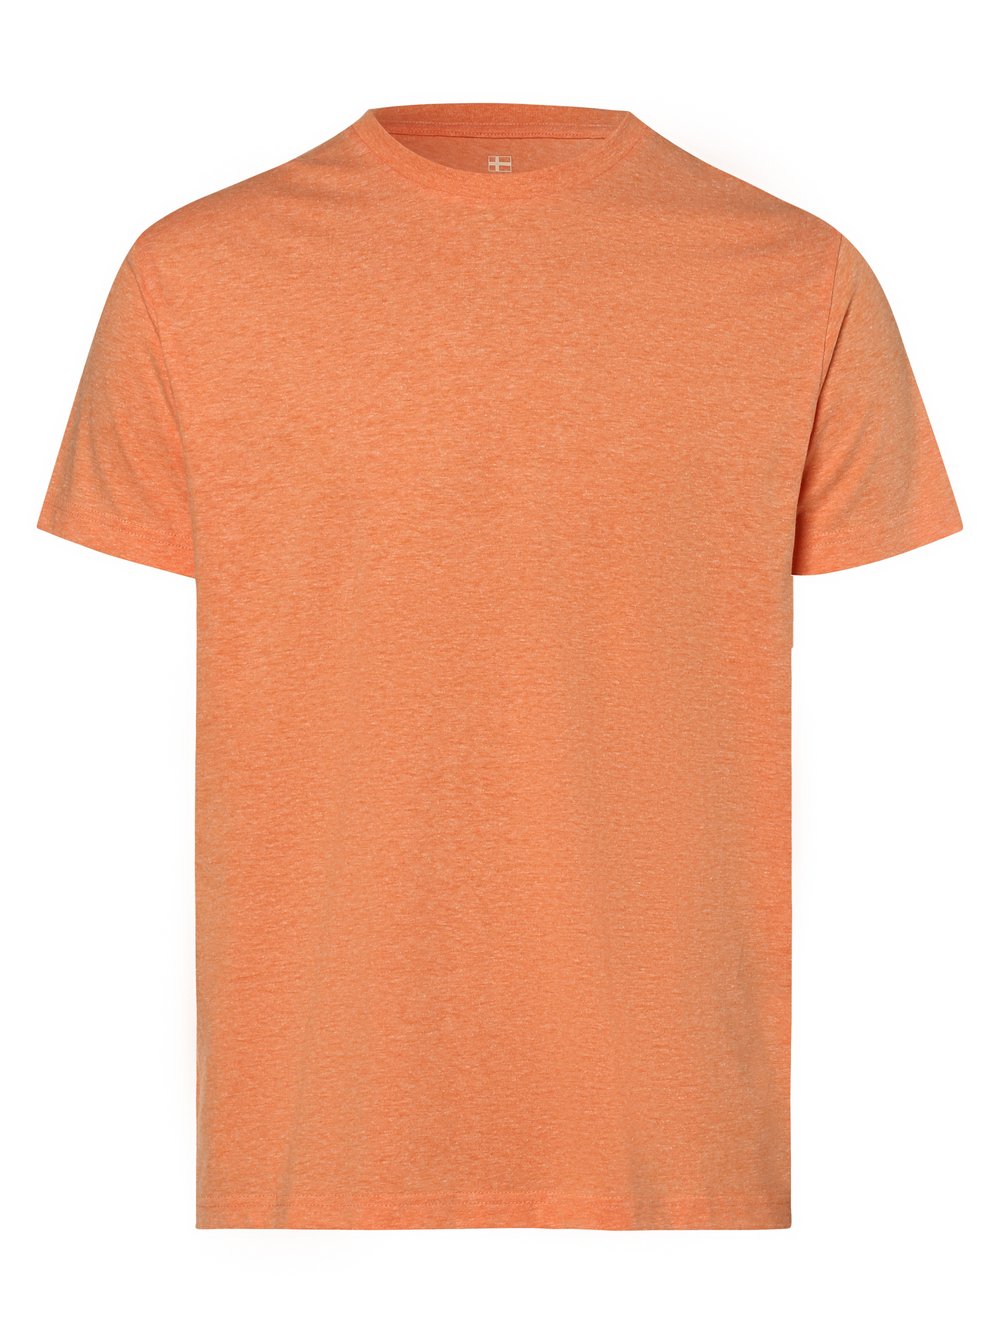 Nils Sundström - T-shirt męski, pomarańczowy